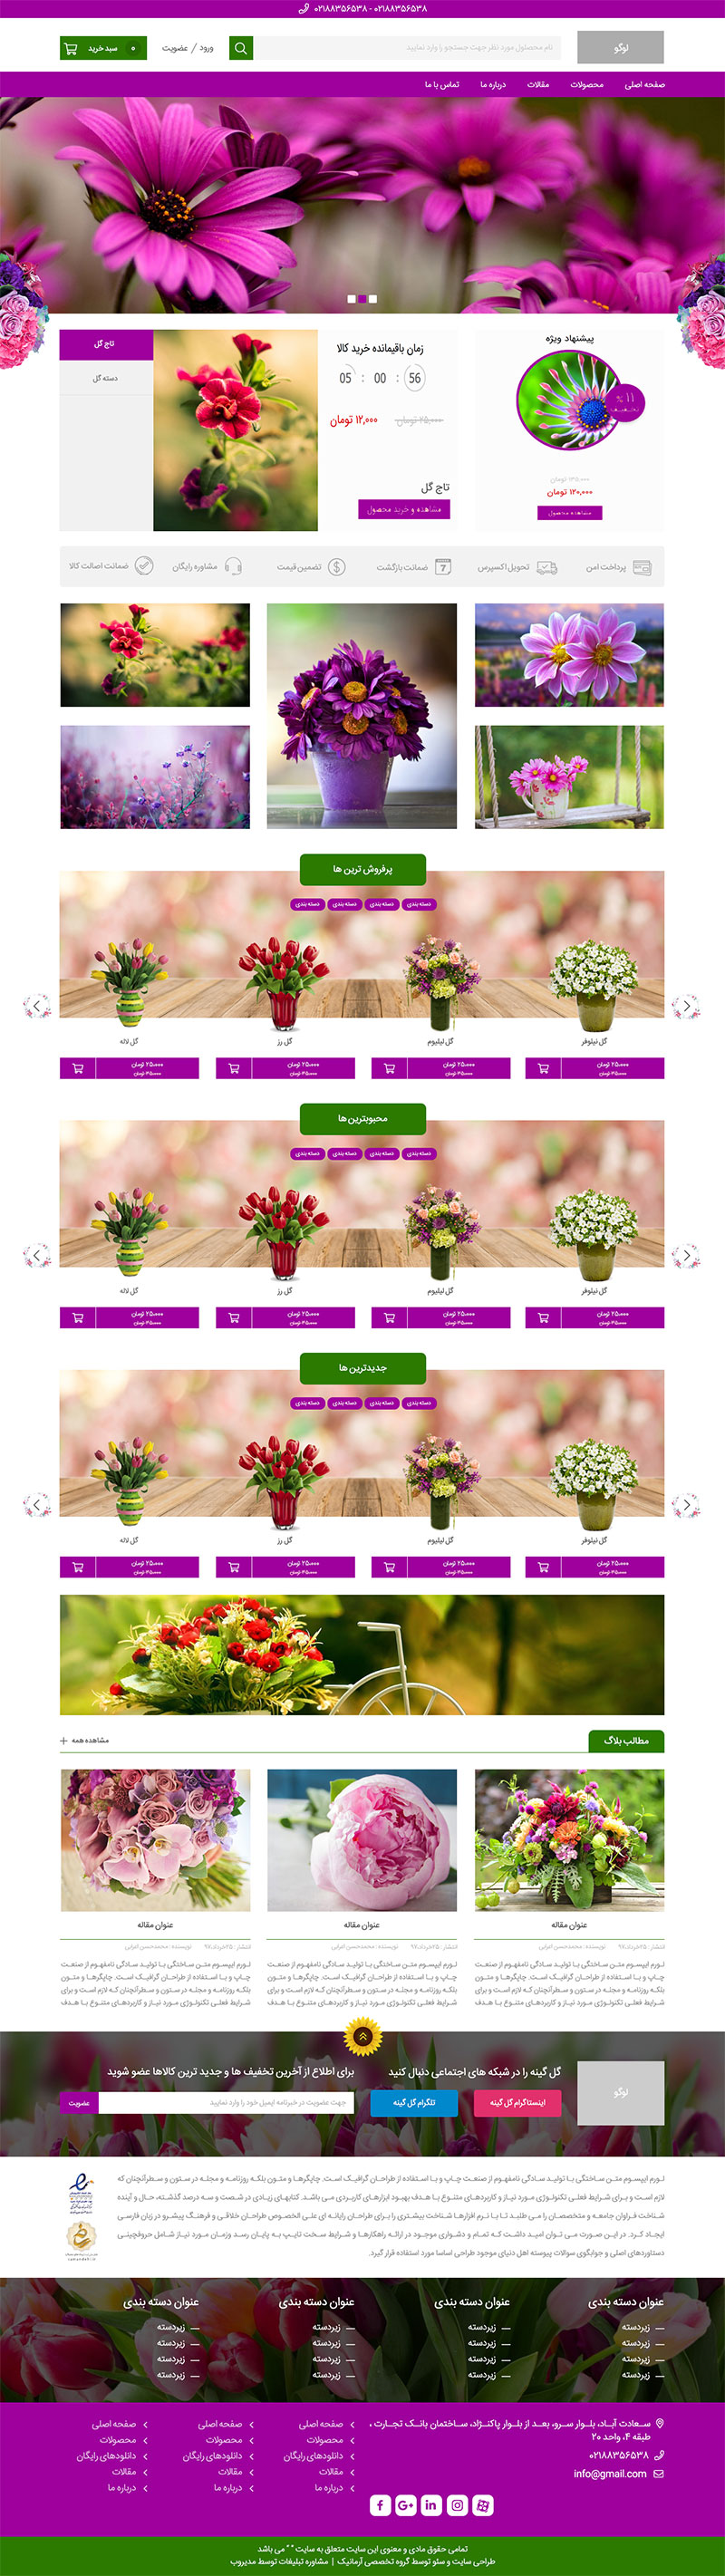 طراحی سایت گل گینه 